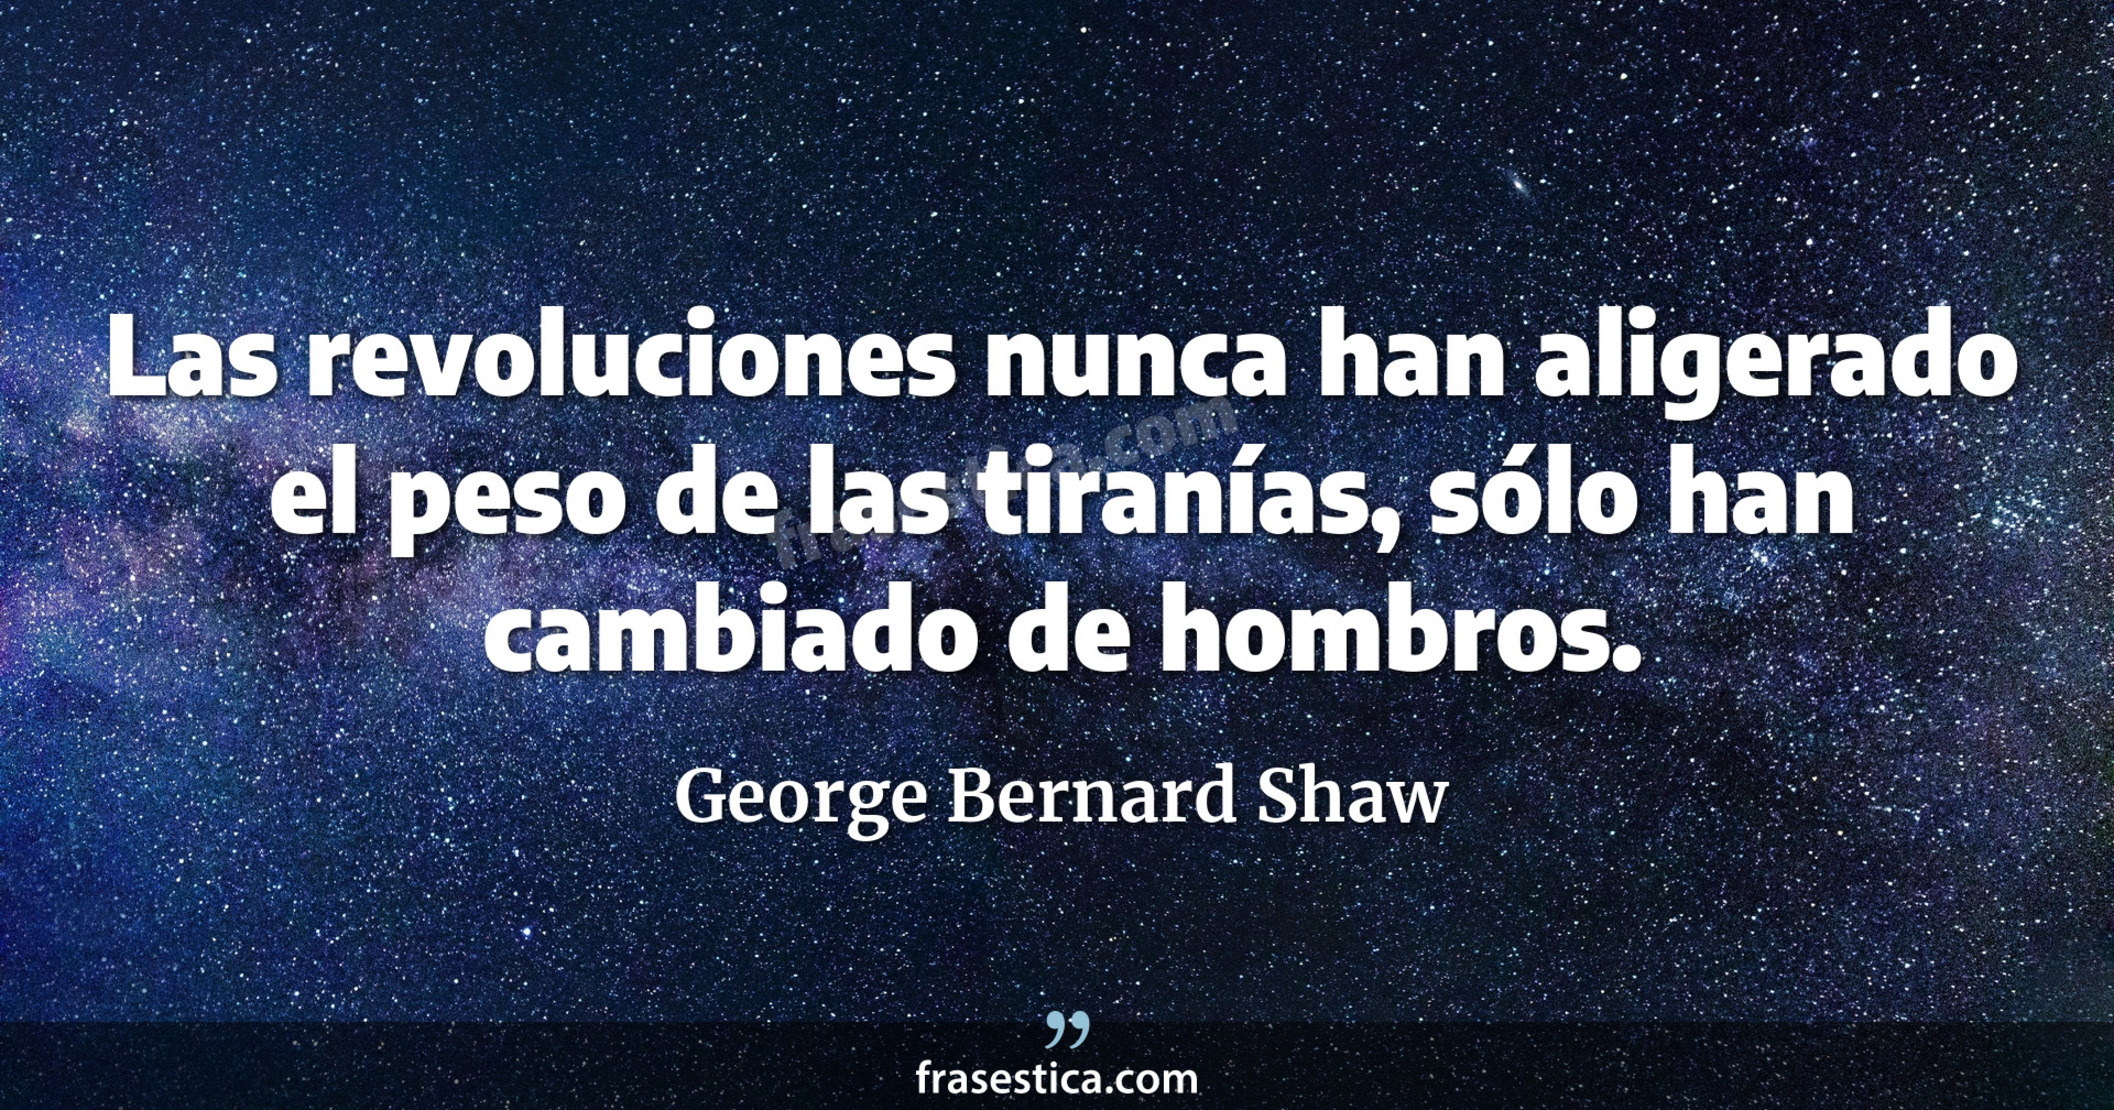 Las revoluciones nunca han aligerado el peso de las tiranías, sólo han cambiado de hombros. - George Bernard Shaw